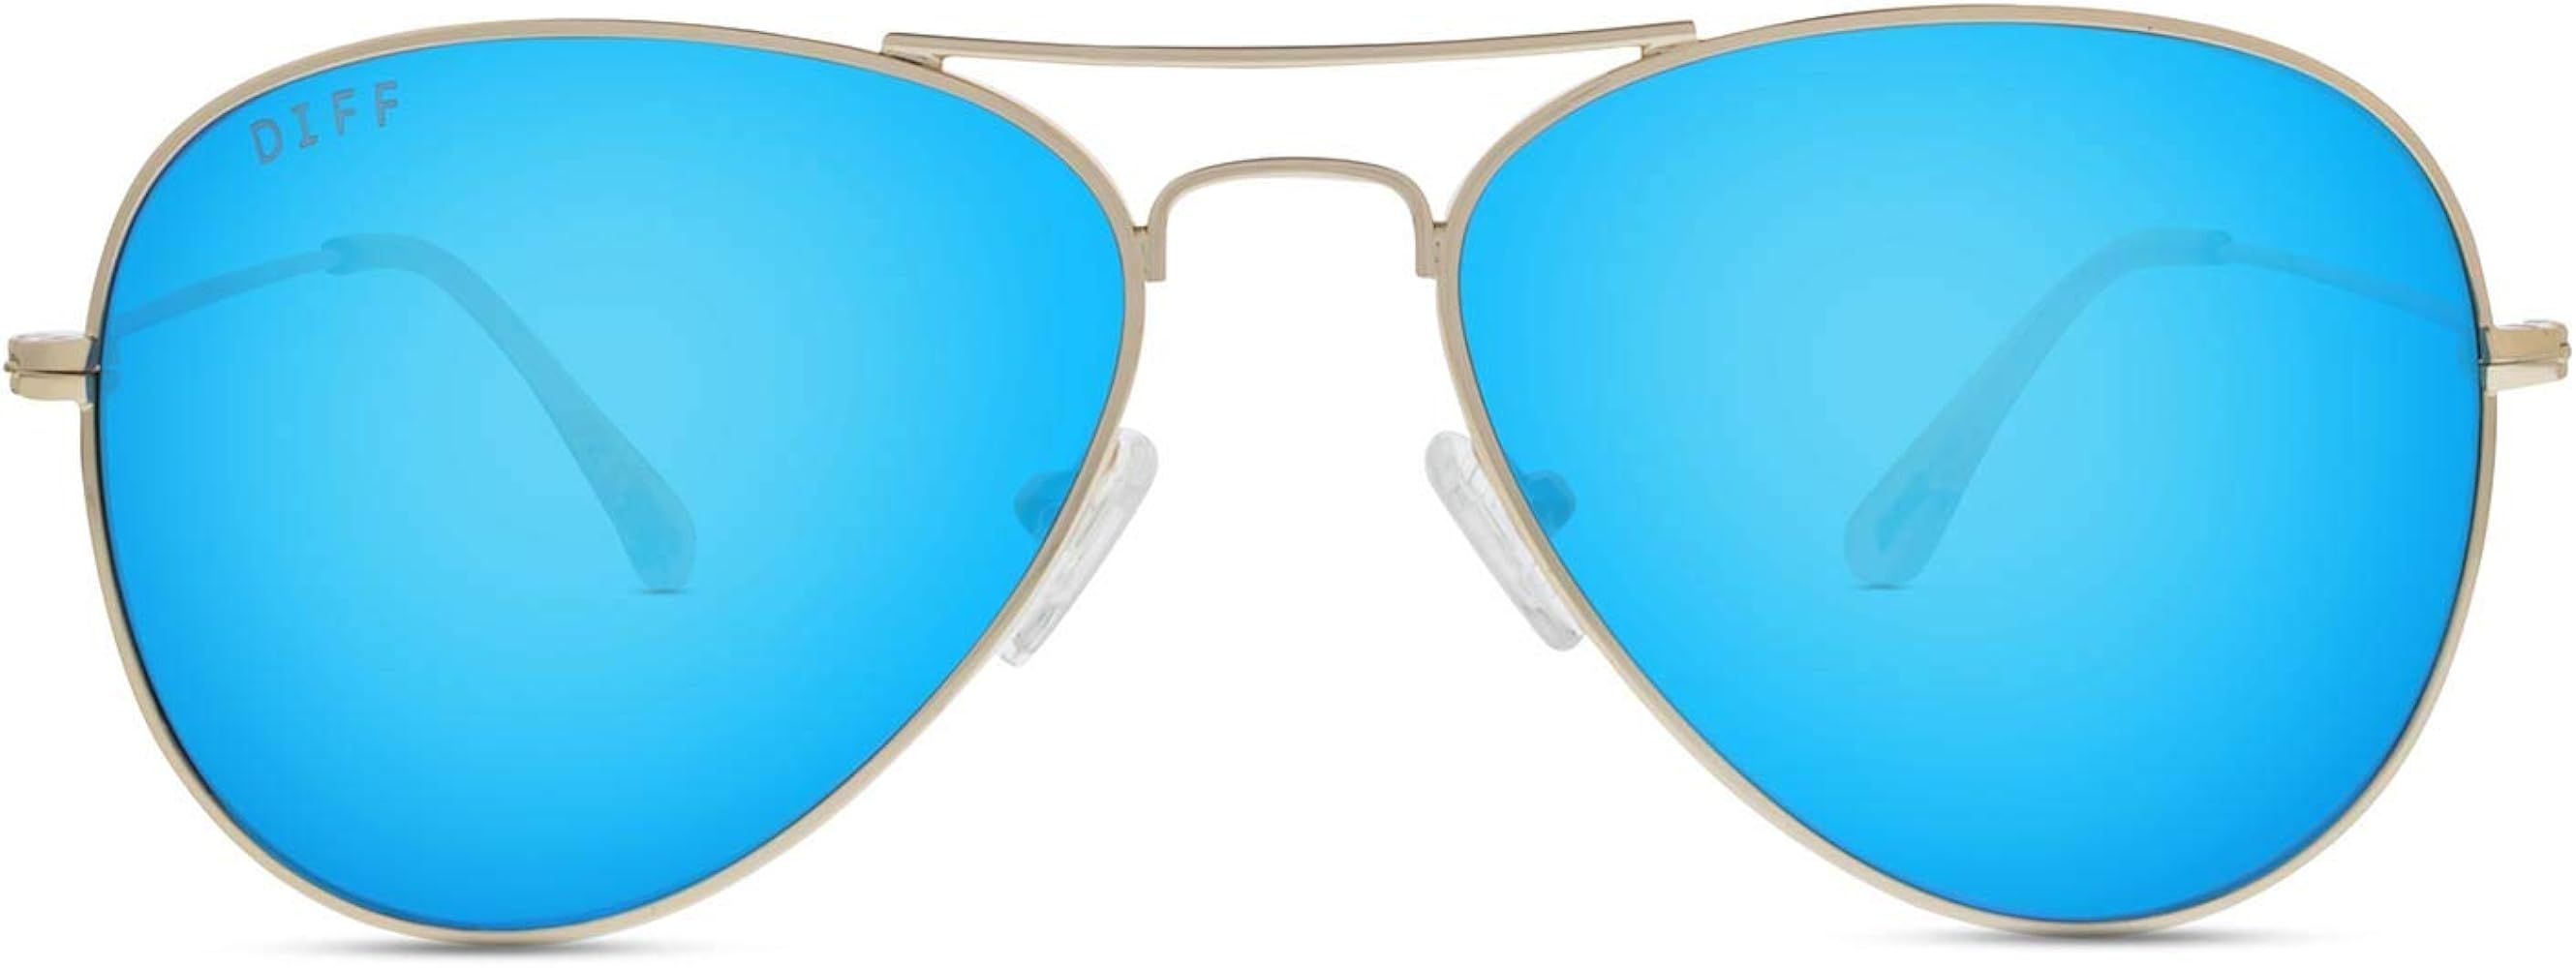 DIFF Eyewear - Cruz - Designer Aviator Sunglasses for Men and Women - 100% UVA/UVB | Amazon (US)